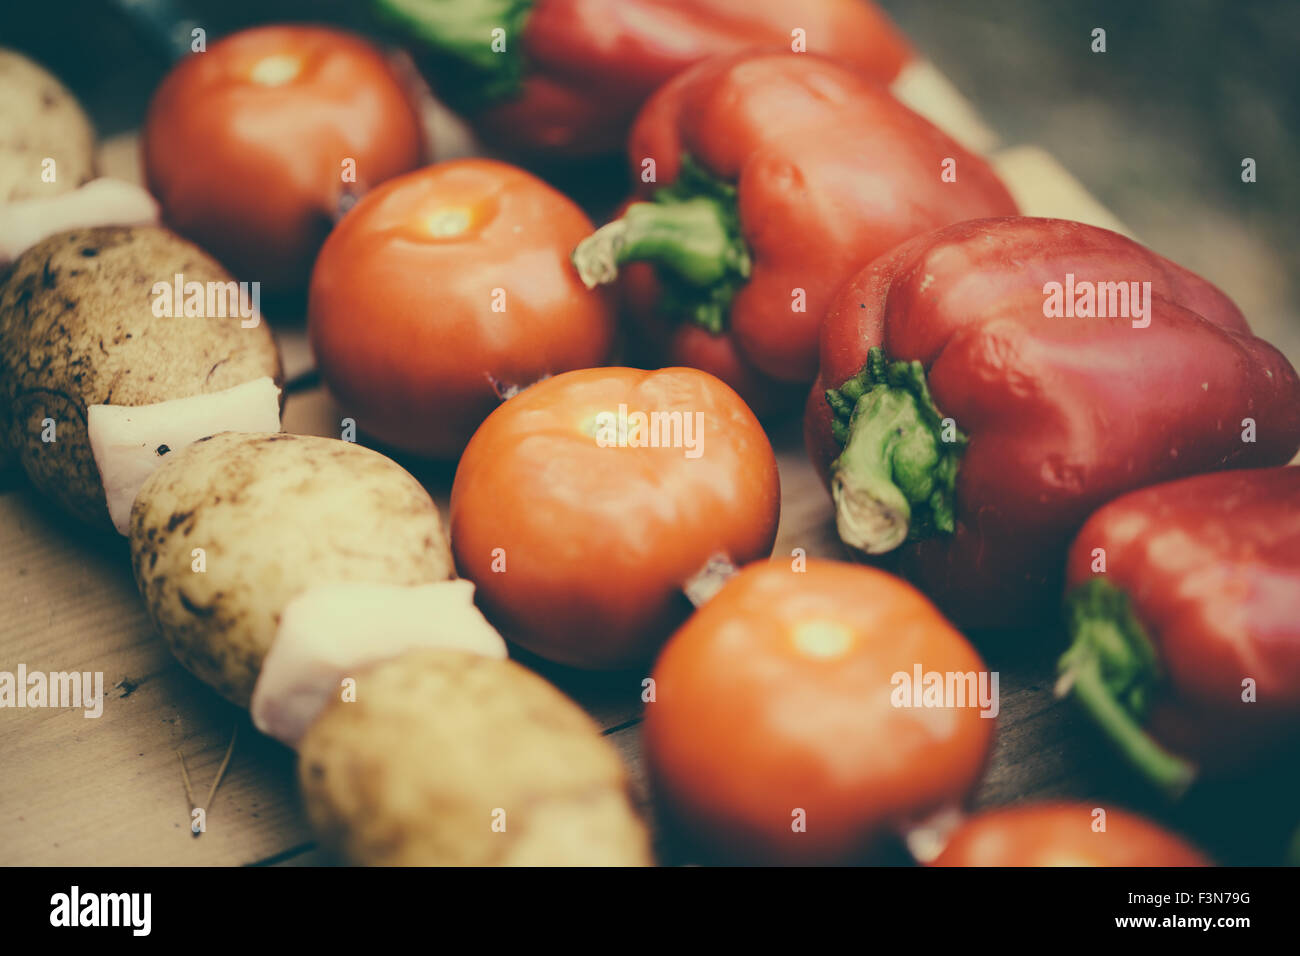 Vegetables on skewers. Stock Photo